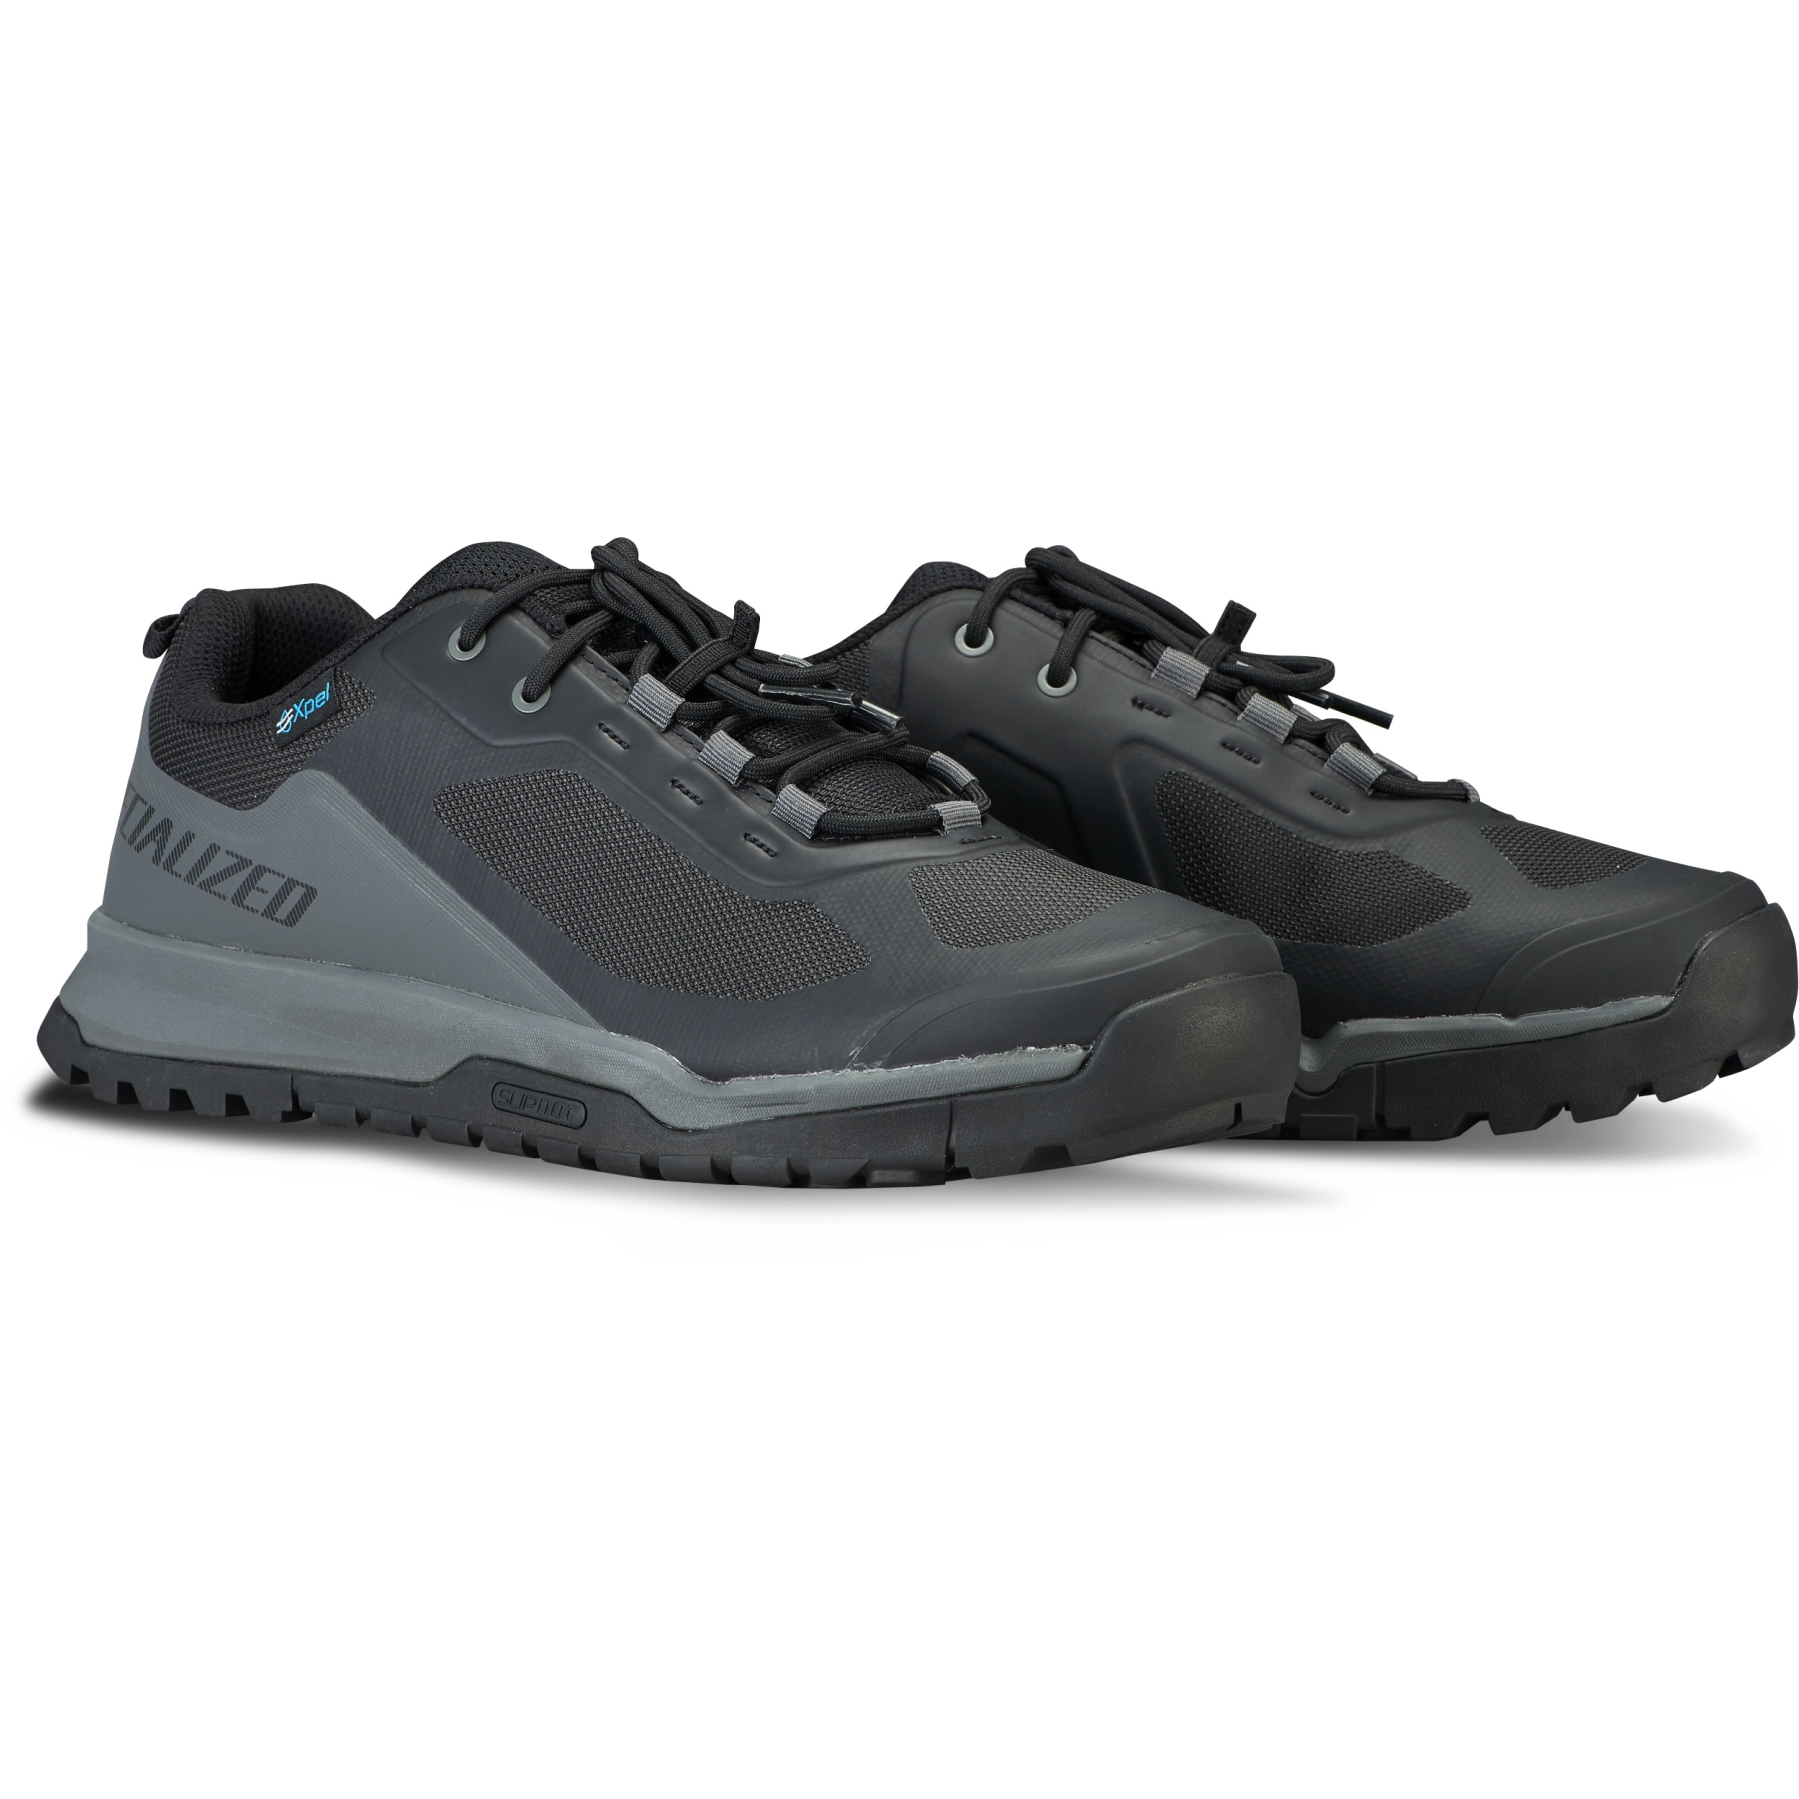 Produktbild von Specialized Rime Flat MTB Schuhe - schwarz